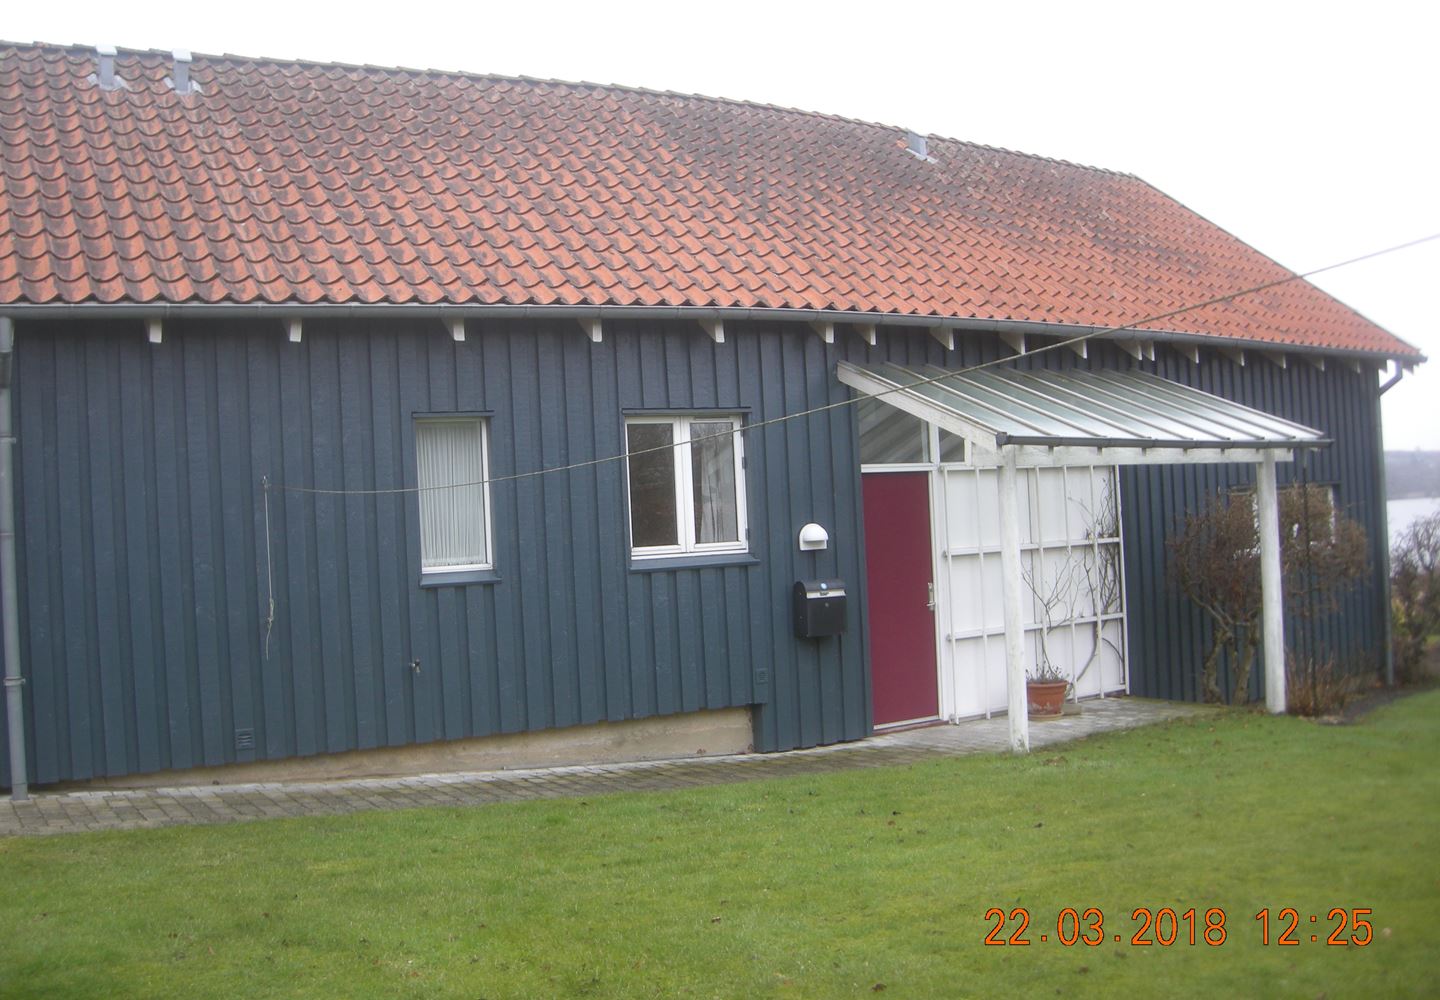 Sct. Knuds Vej 8, 8800 Viborg